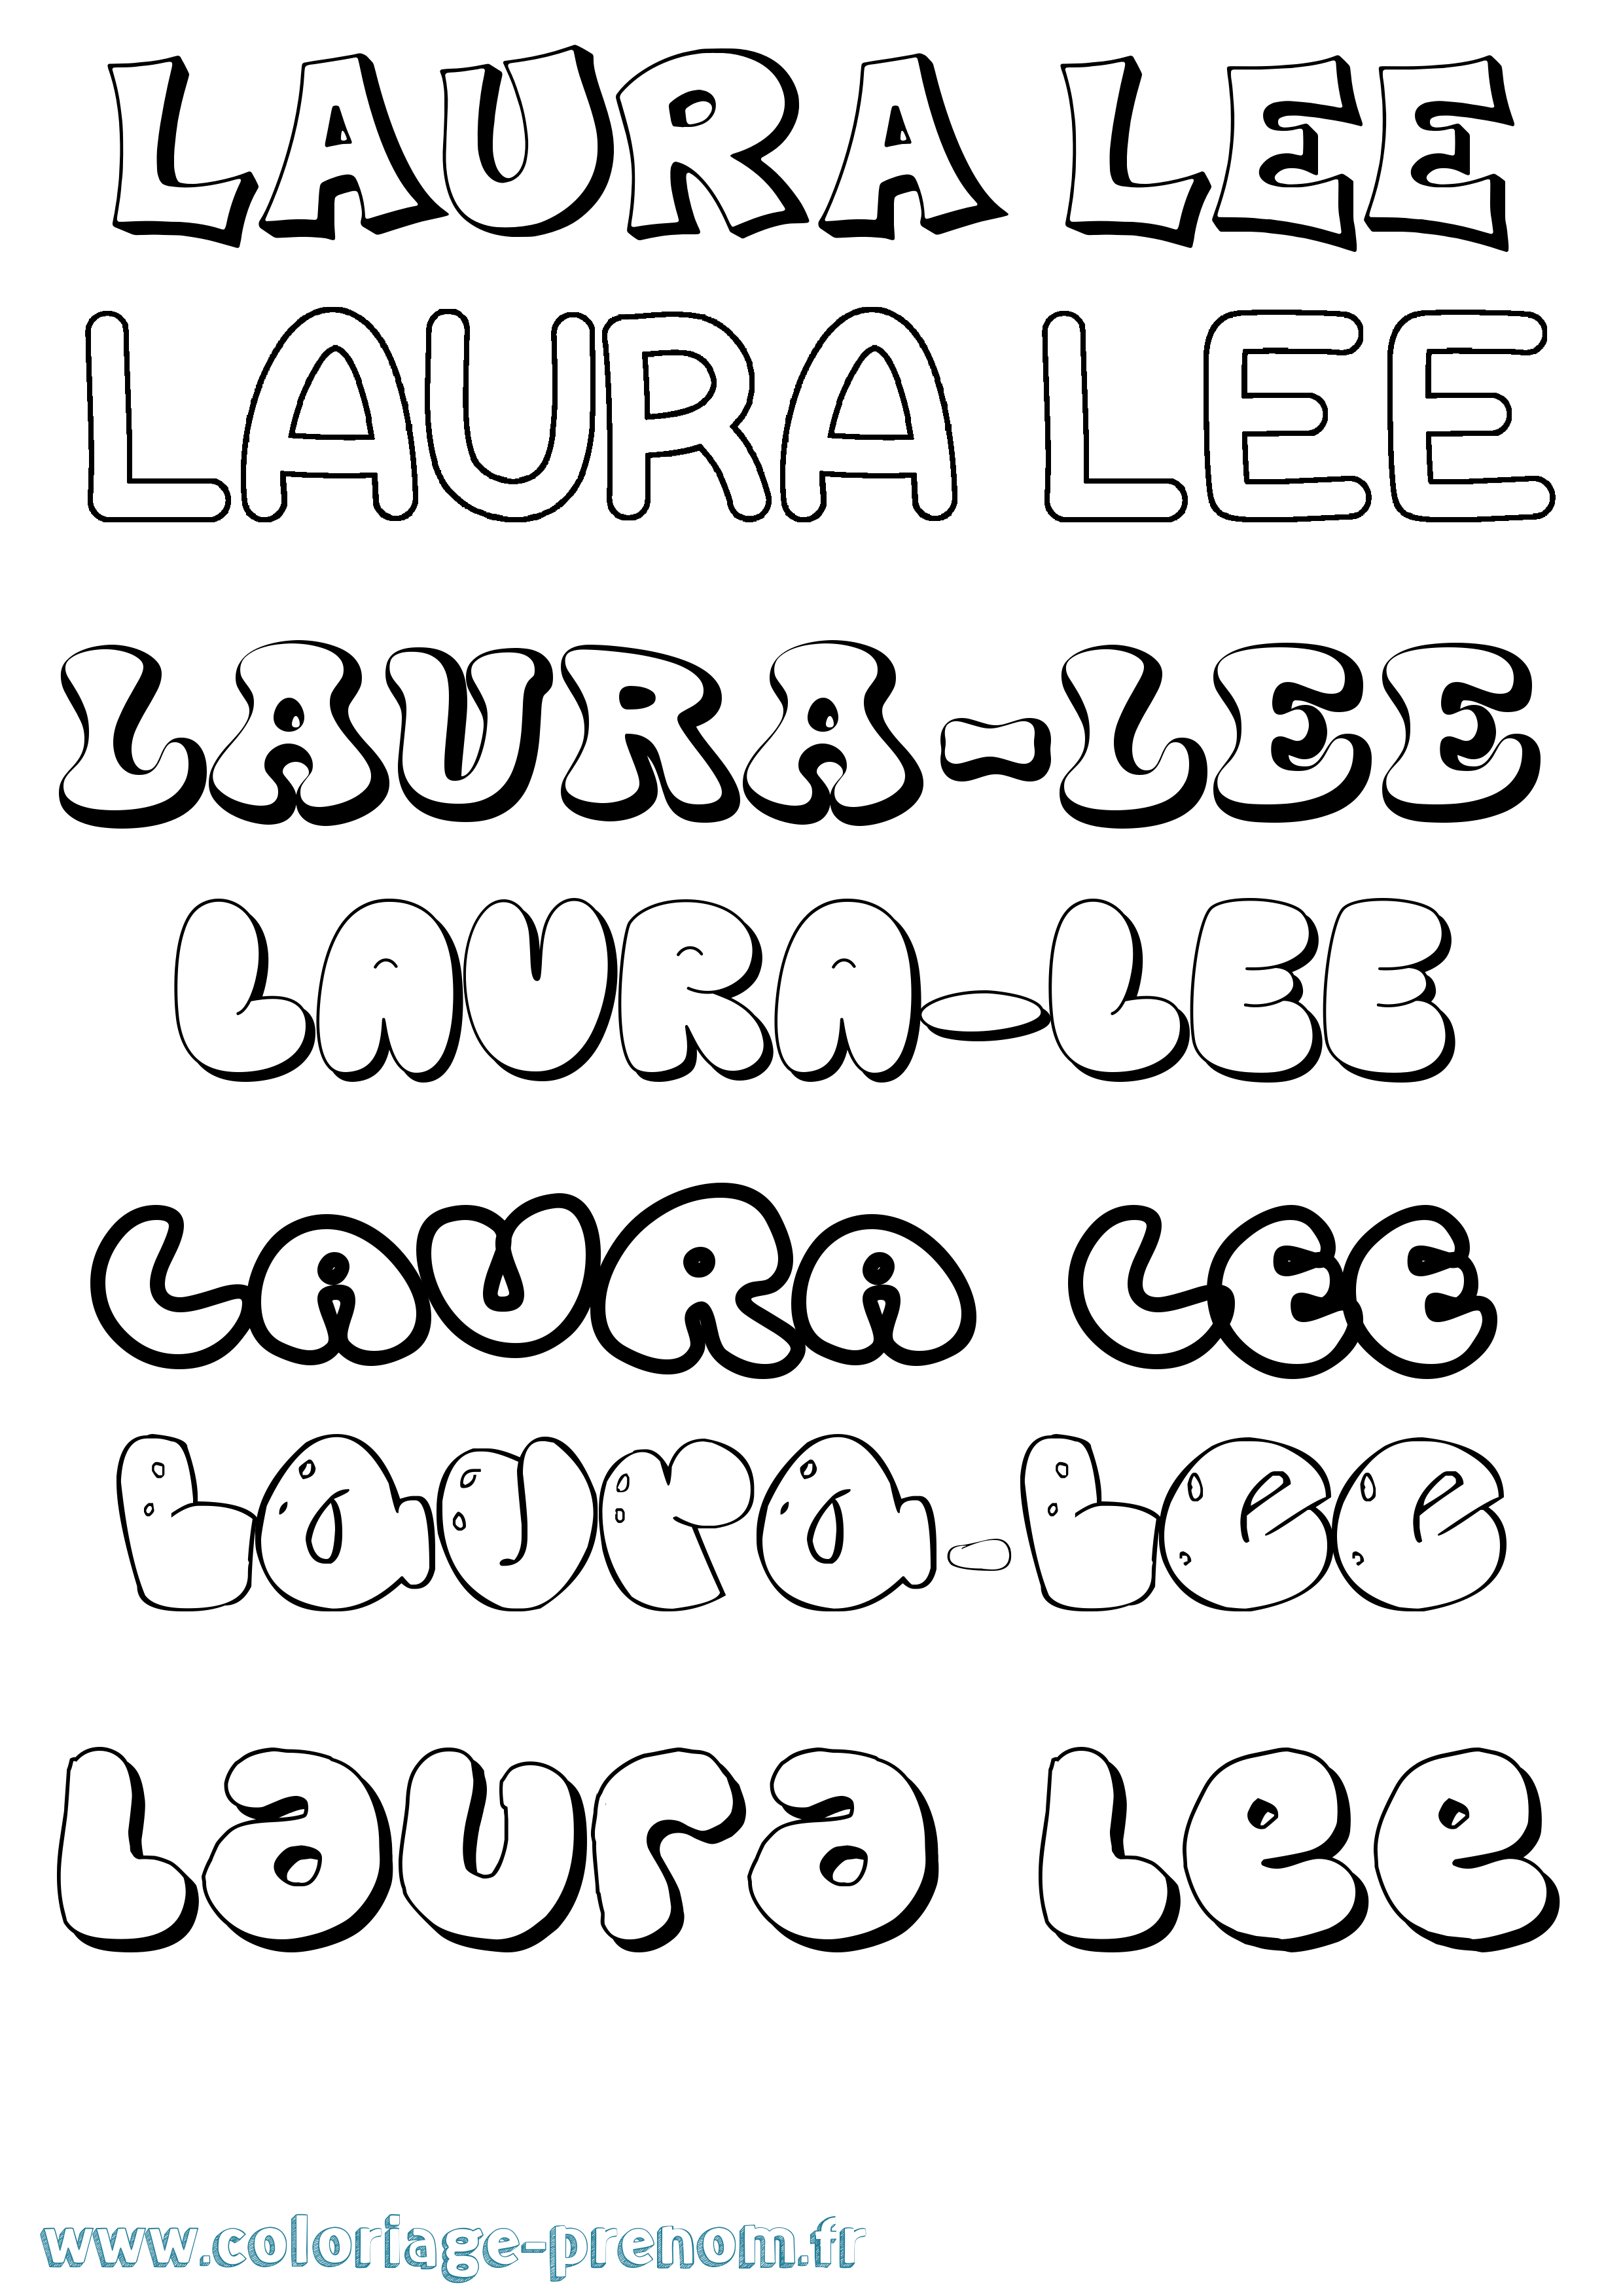 Coloriage prénom Laura-Lee Bubble